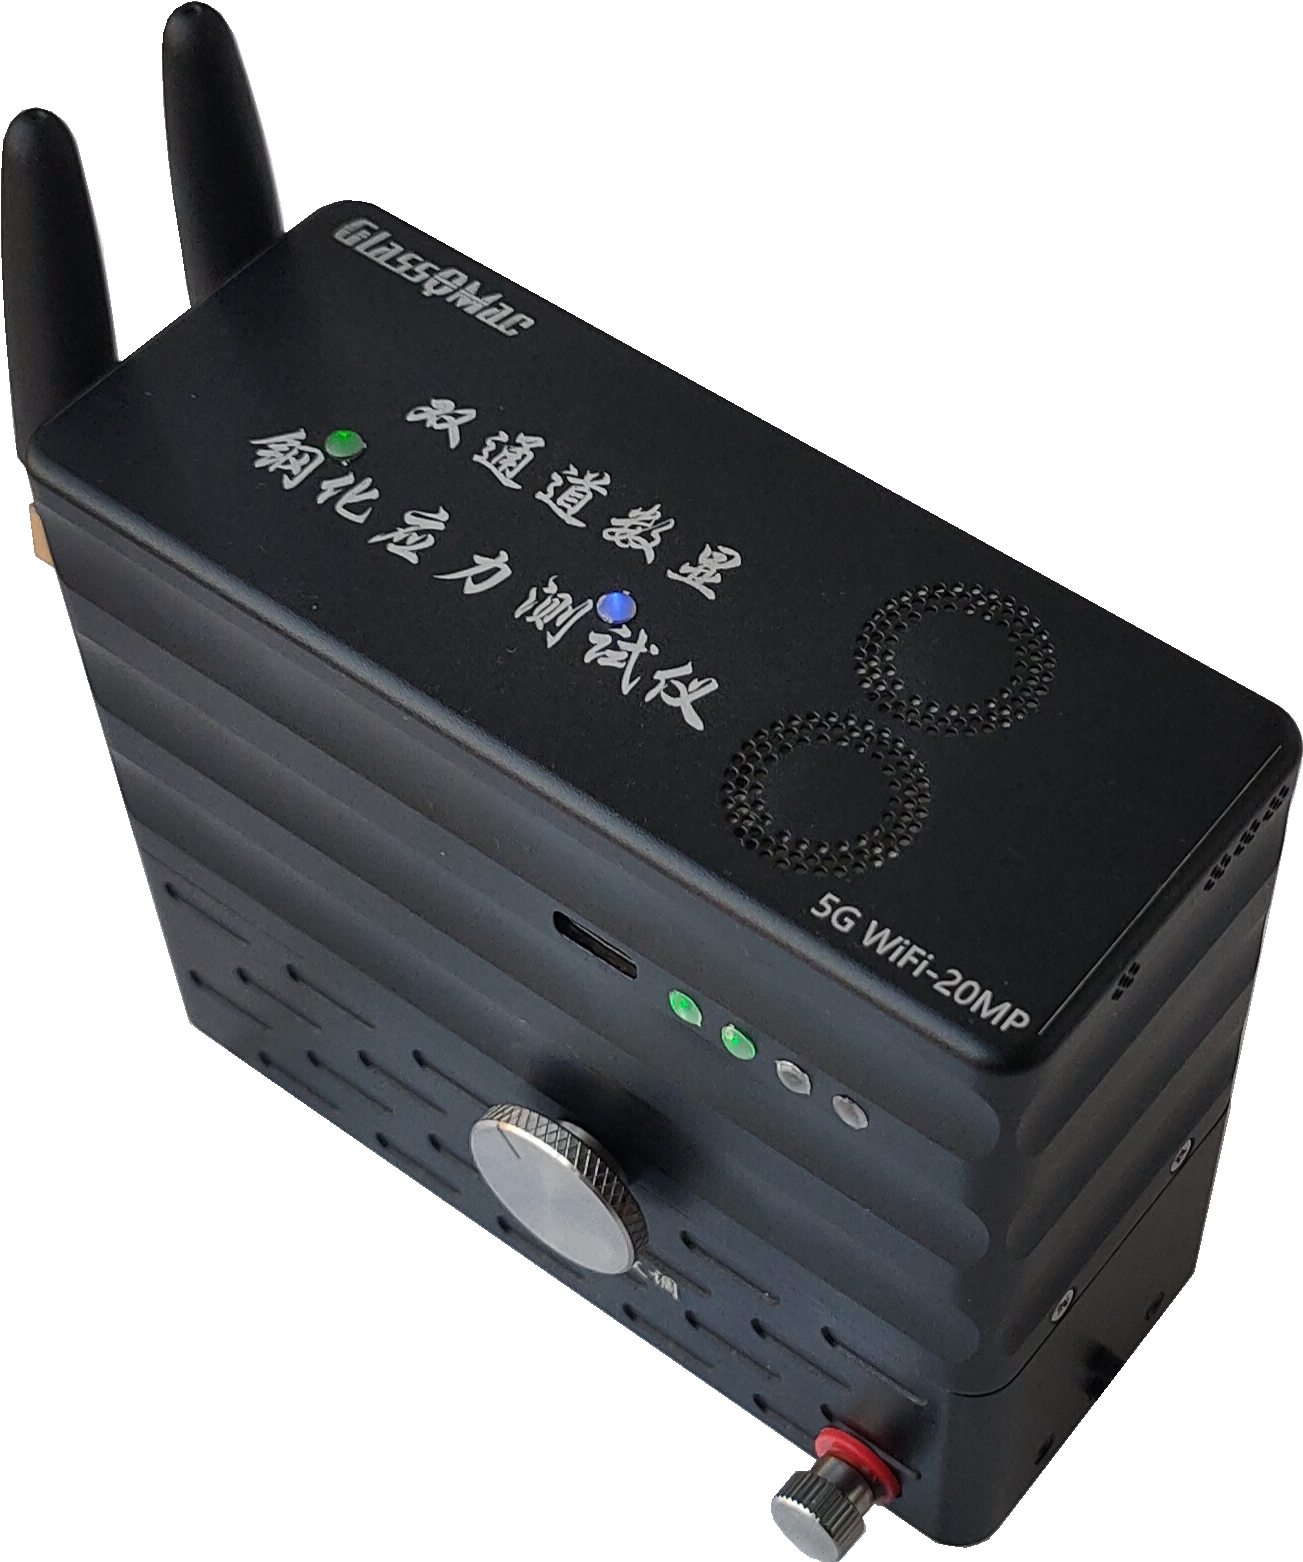 双通道数显钢化应力测试仪(5G WiFi-20MP)